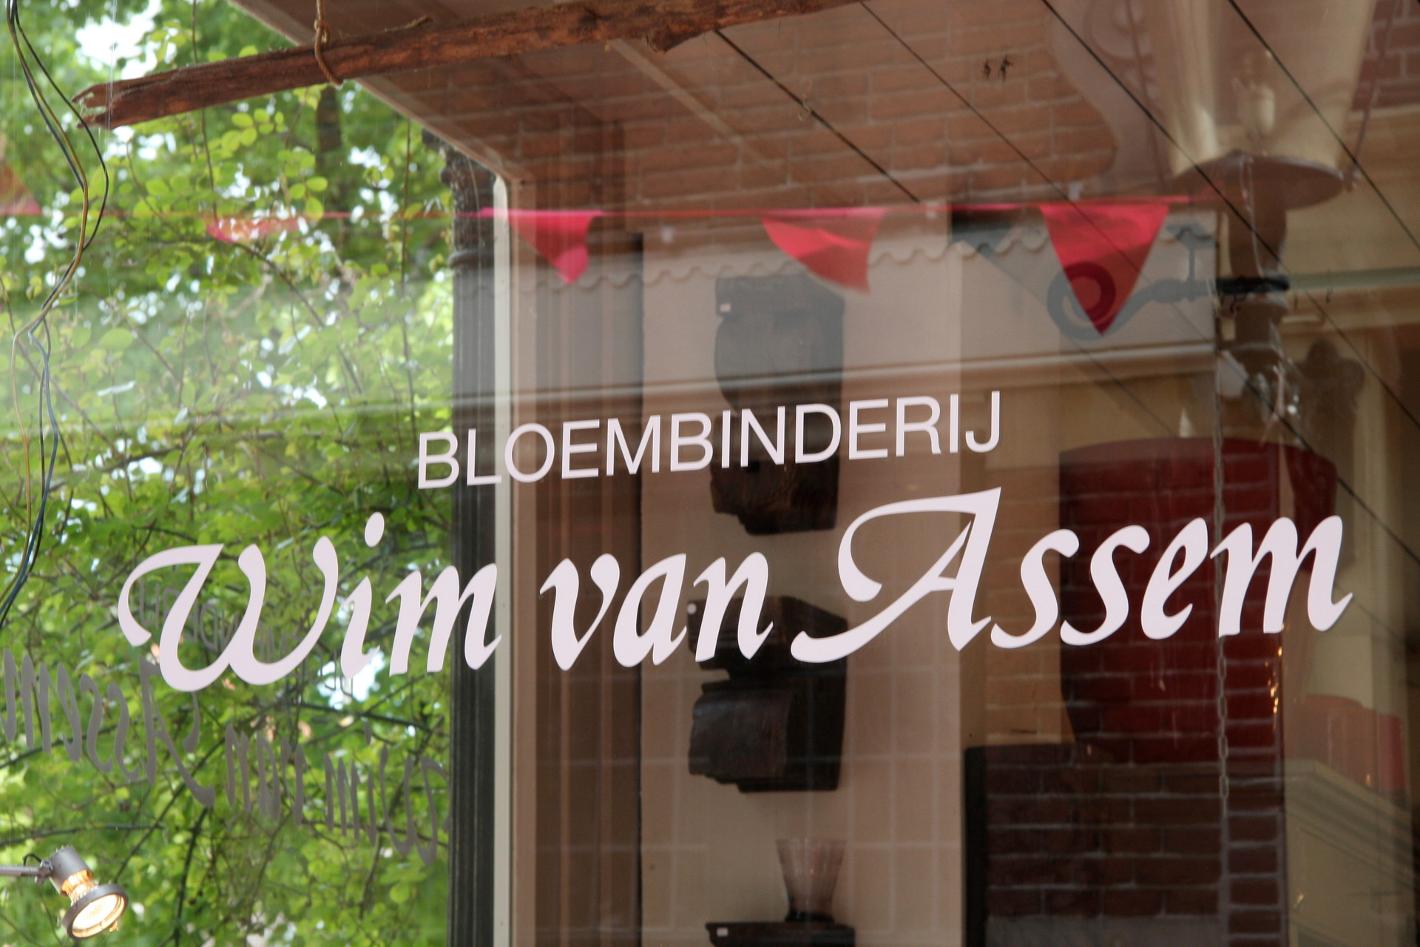 Photo Wim van Assem bloembinderij en Alkmaar, Shopping, Acheter des cadeaux, Accessoires pour la maison - #1